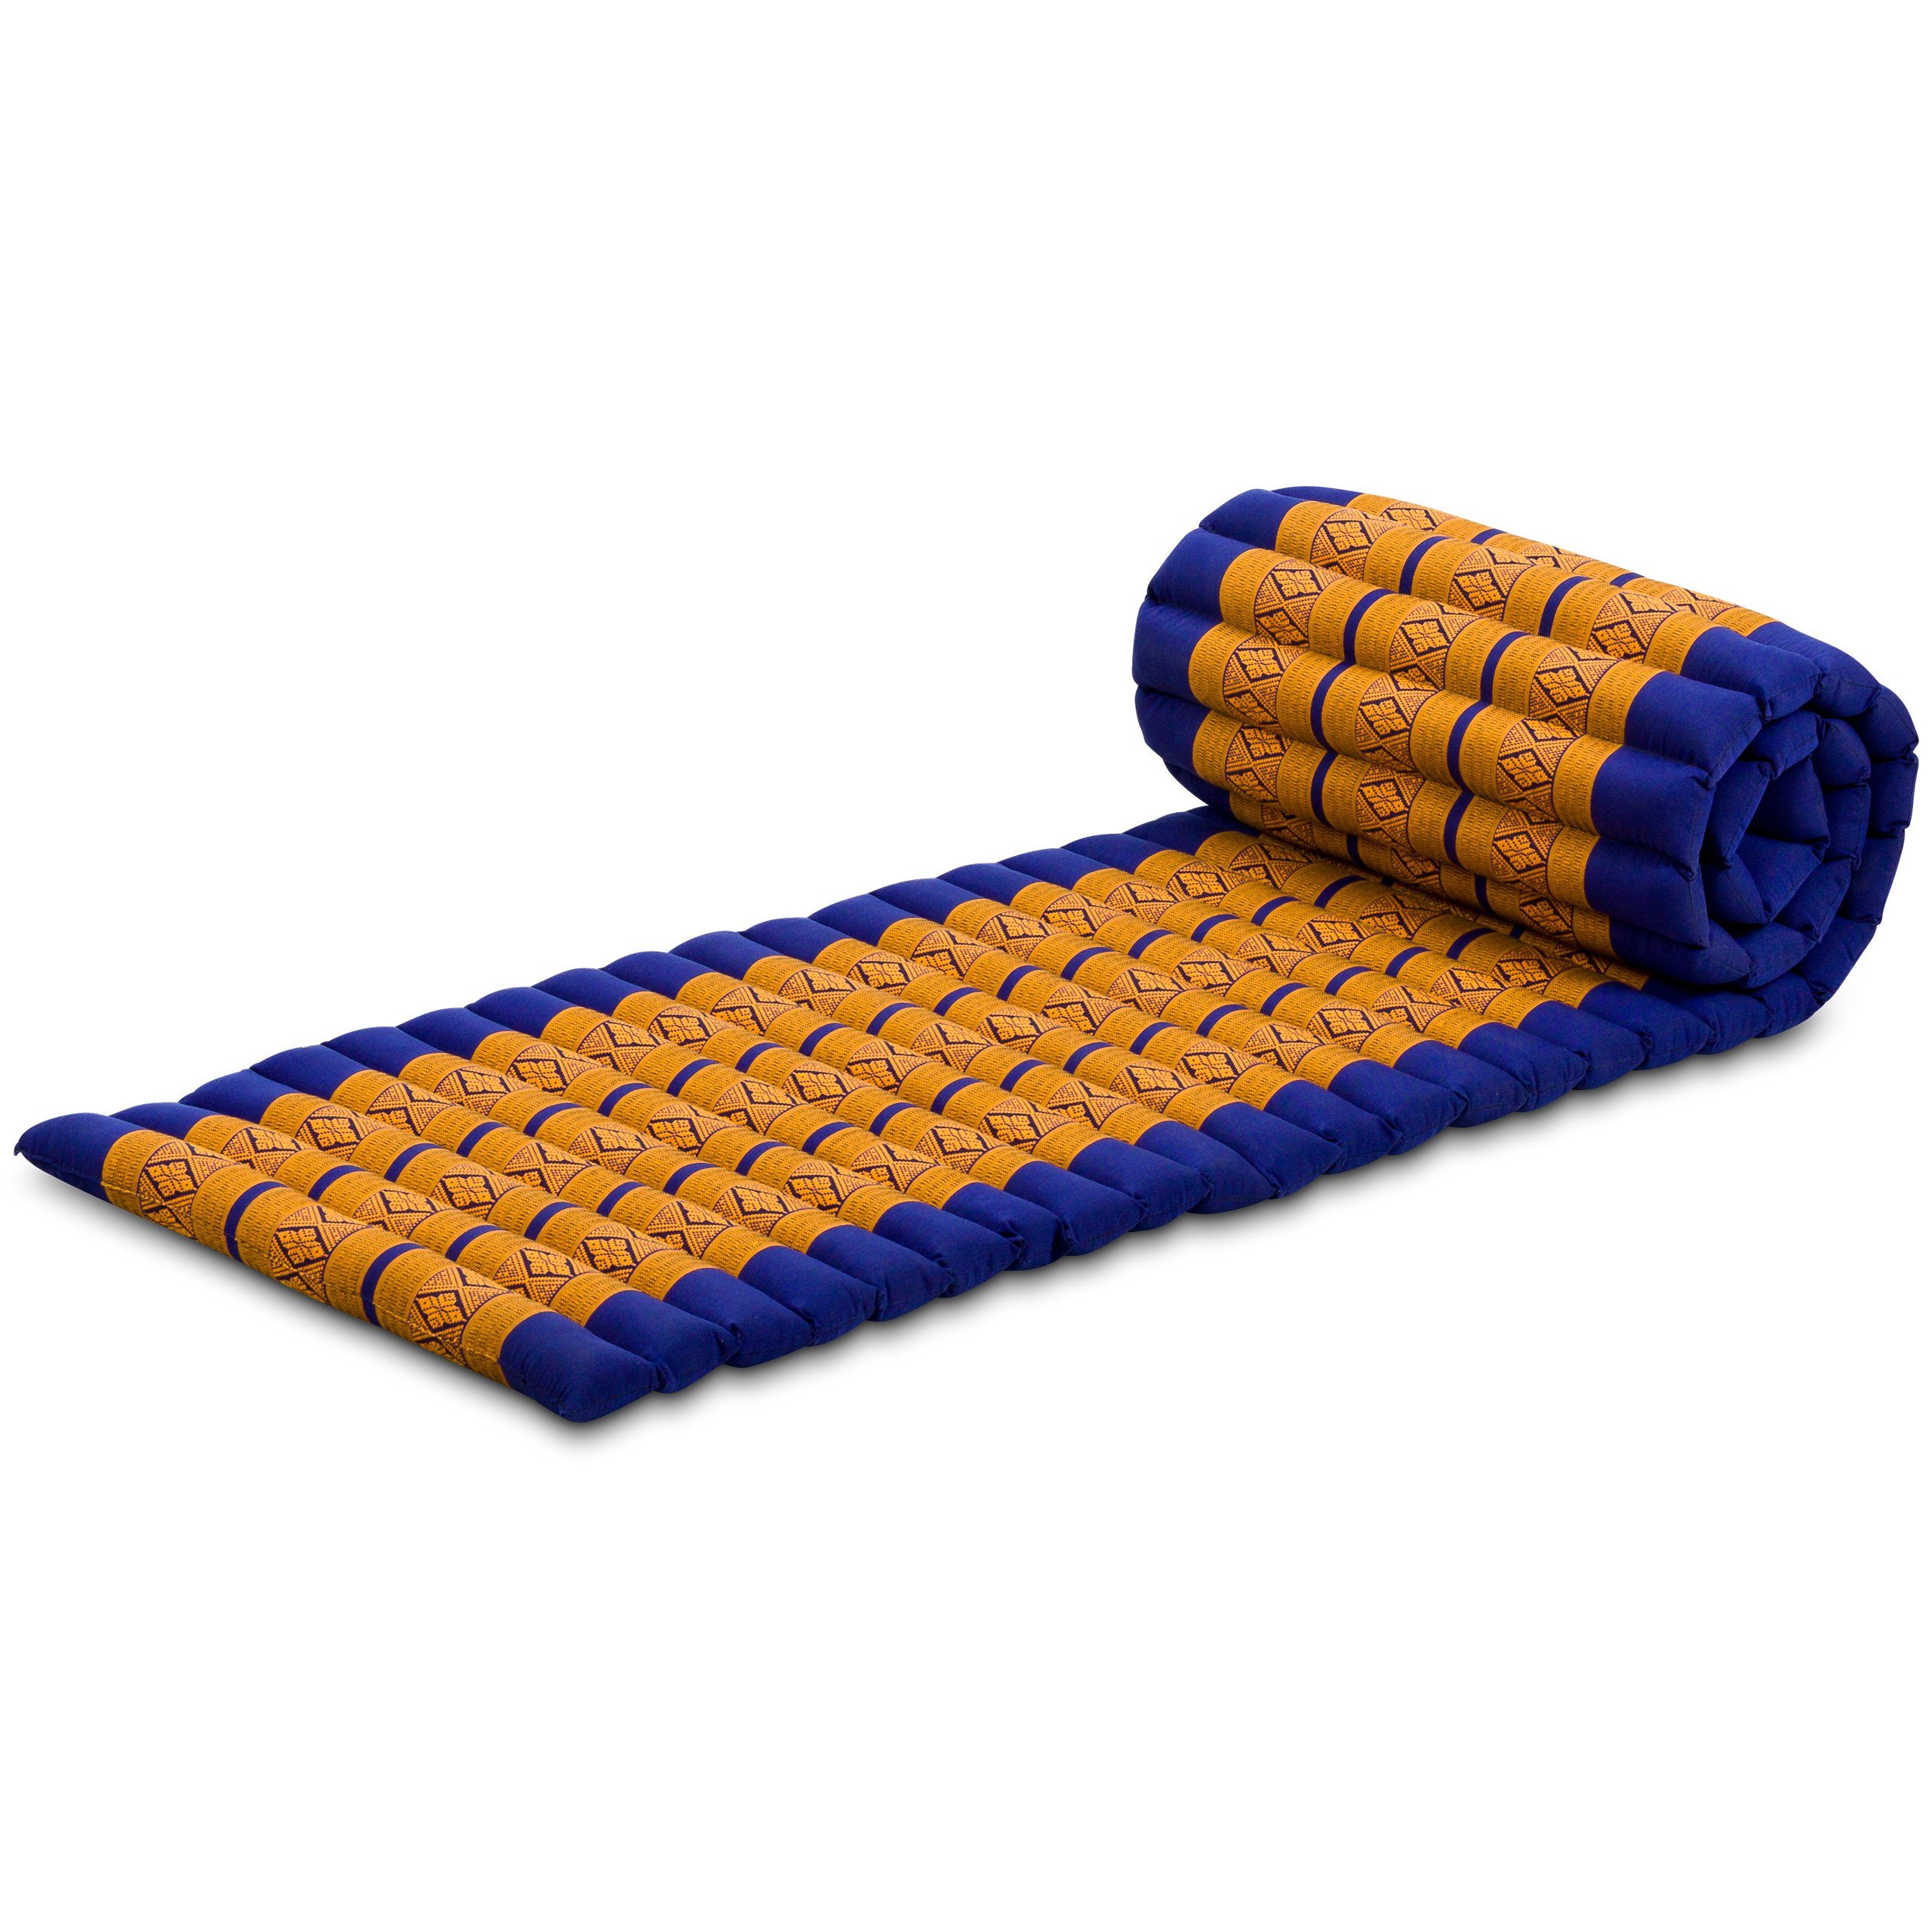 Reisebett-Matratzen Rollmatte 50 cm breit, vegan und handgefertigt, 210x50x4,5cm, livasia, 4,50 cm hoch, Kapok Blau/Gelb